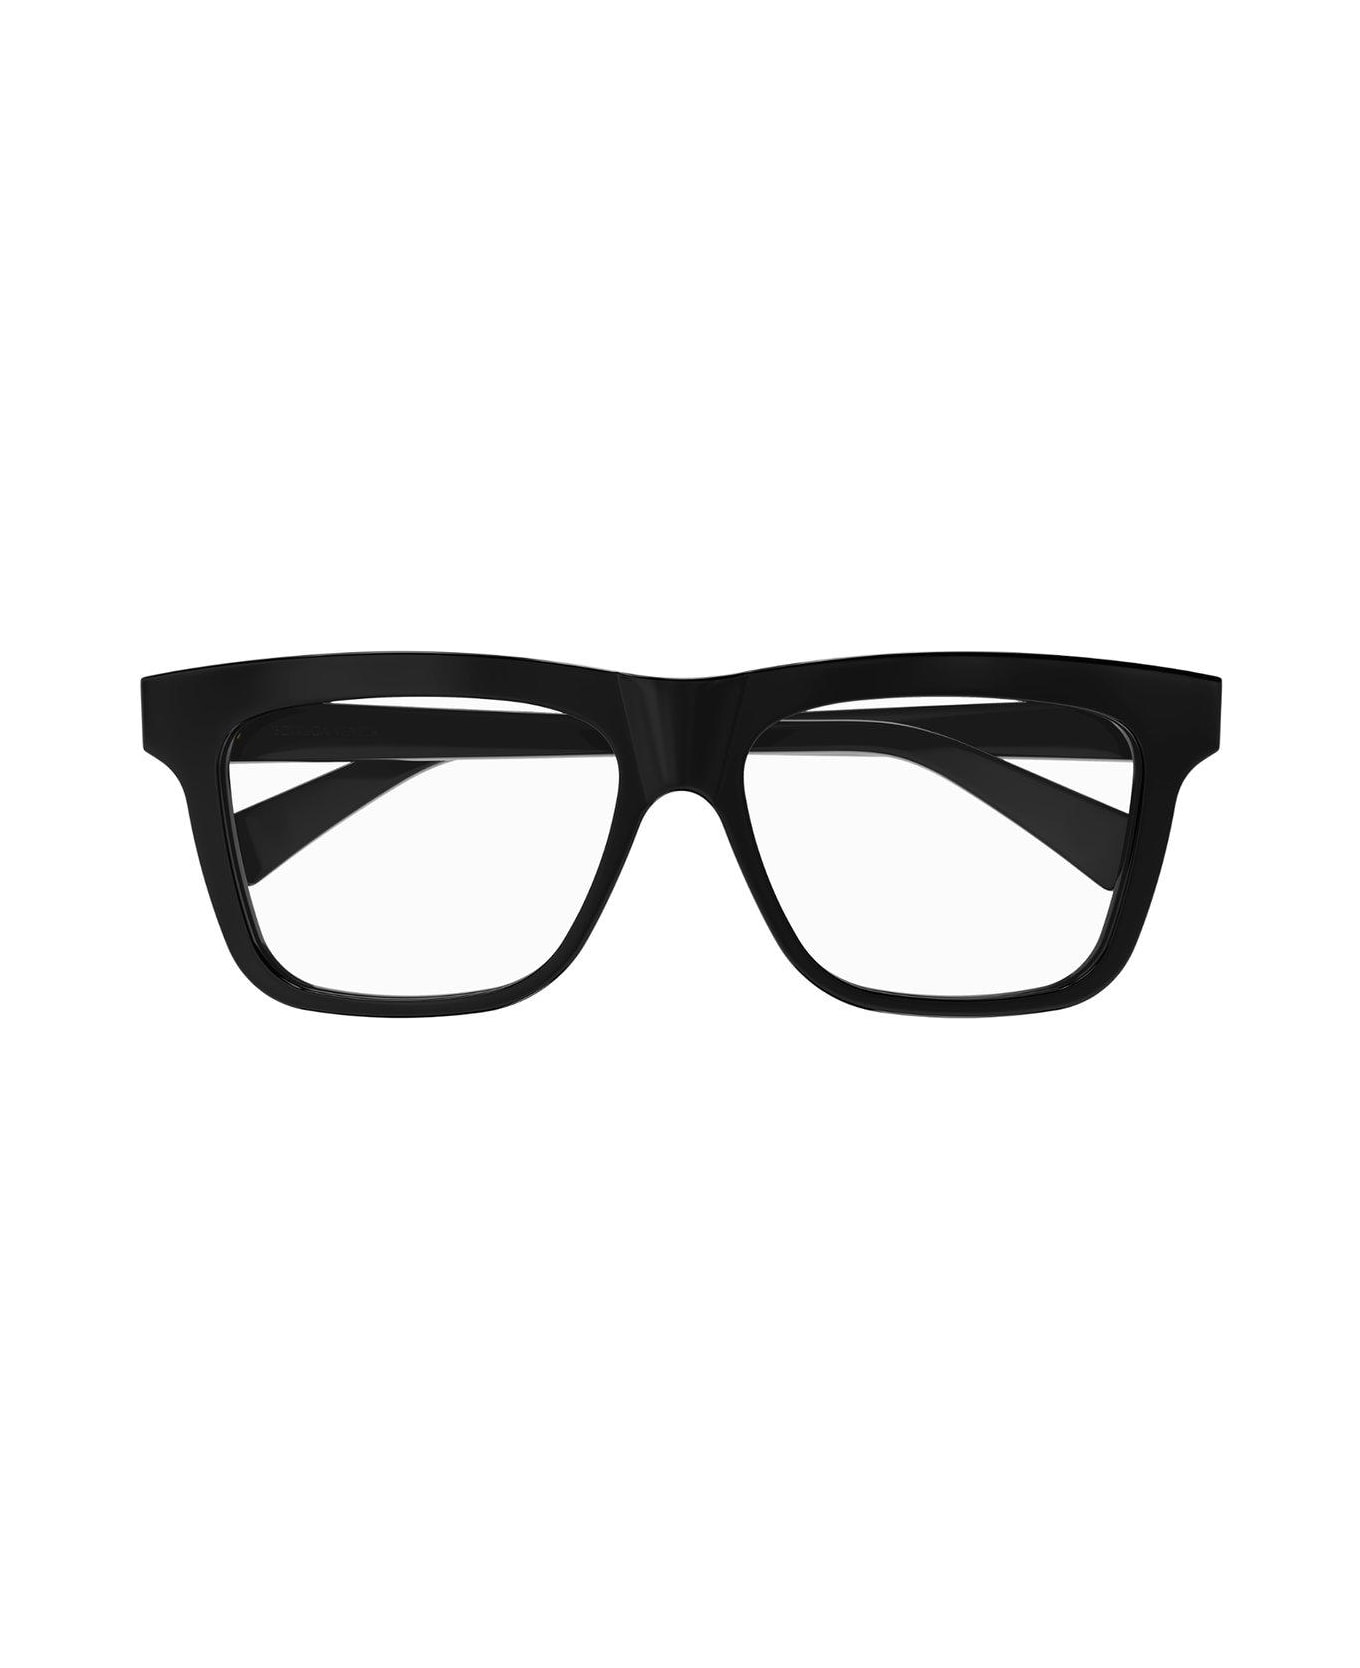 Bottega Veneta Eyewear Square-frame Glasses - 006 black black transpare